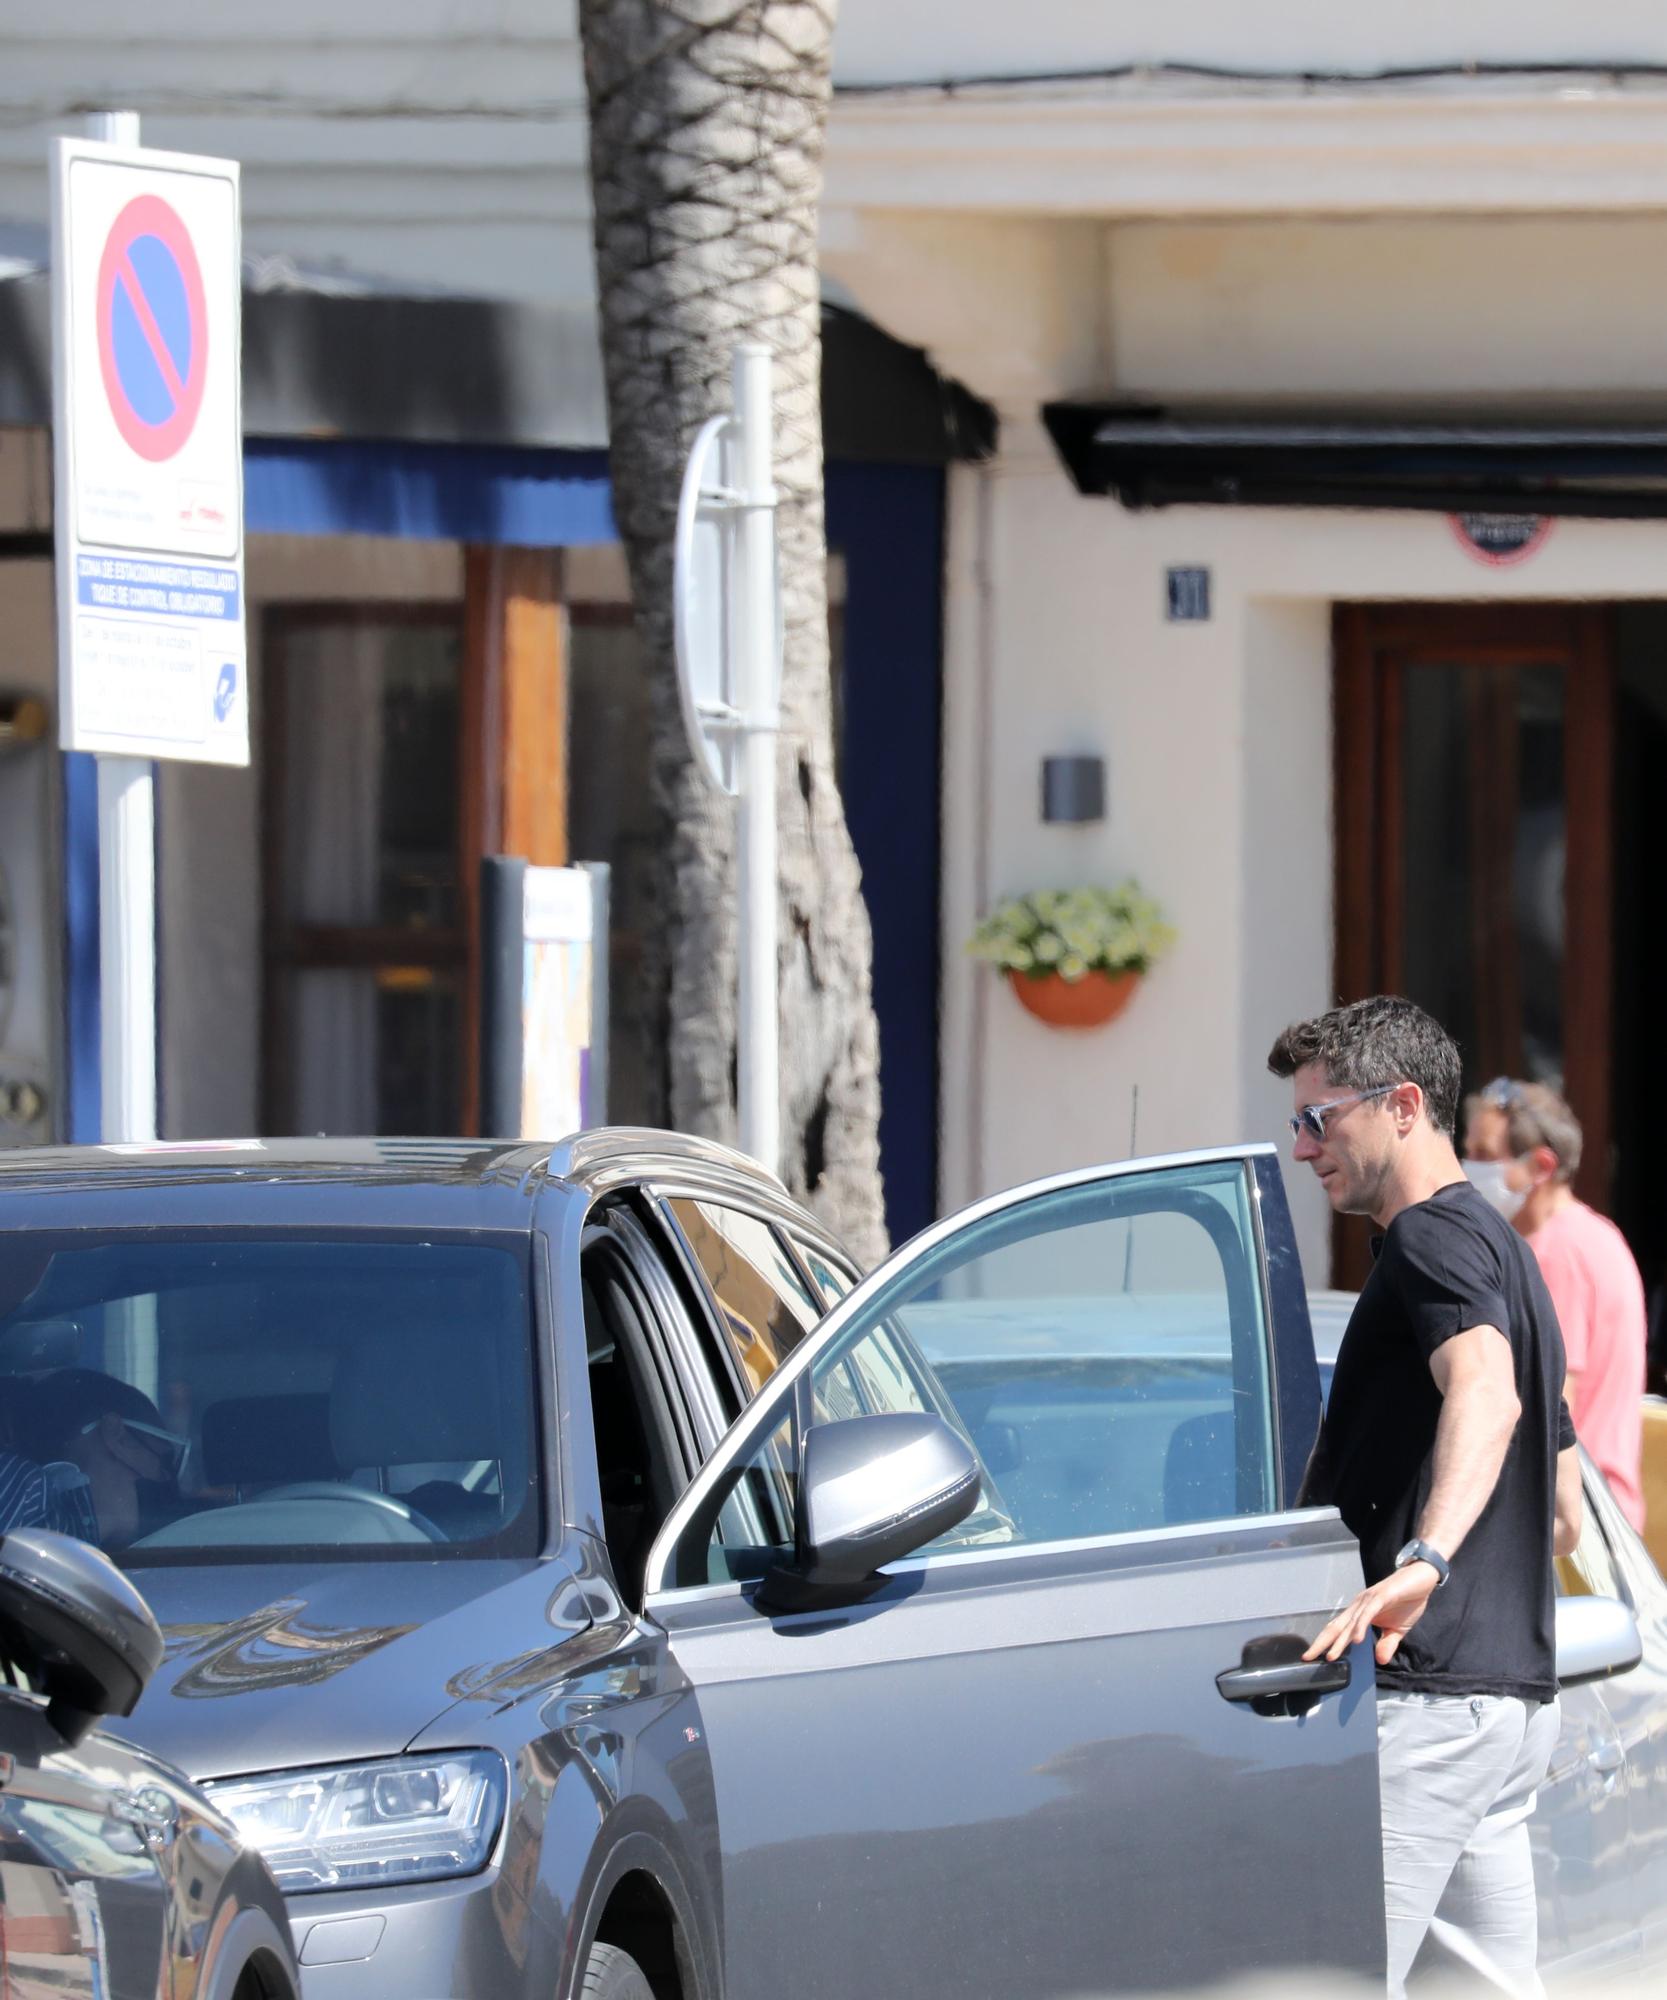 El futbolista Lewandowski, multado durante sus vacaciones en Mallorca